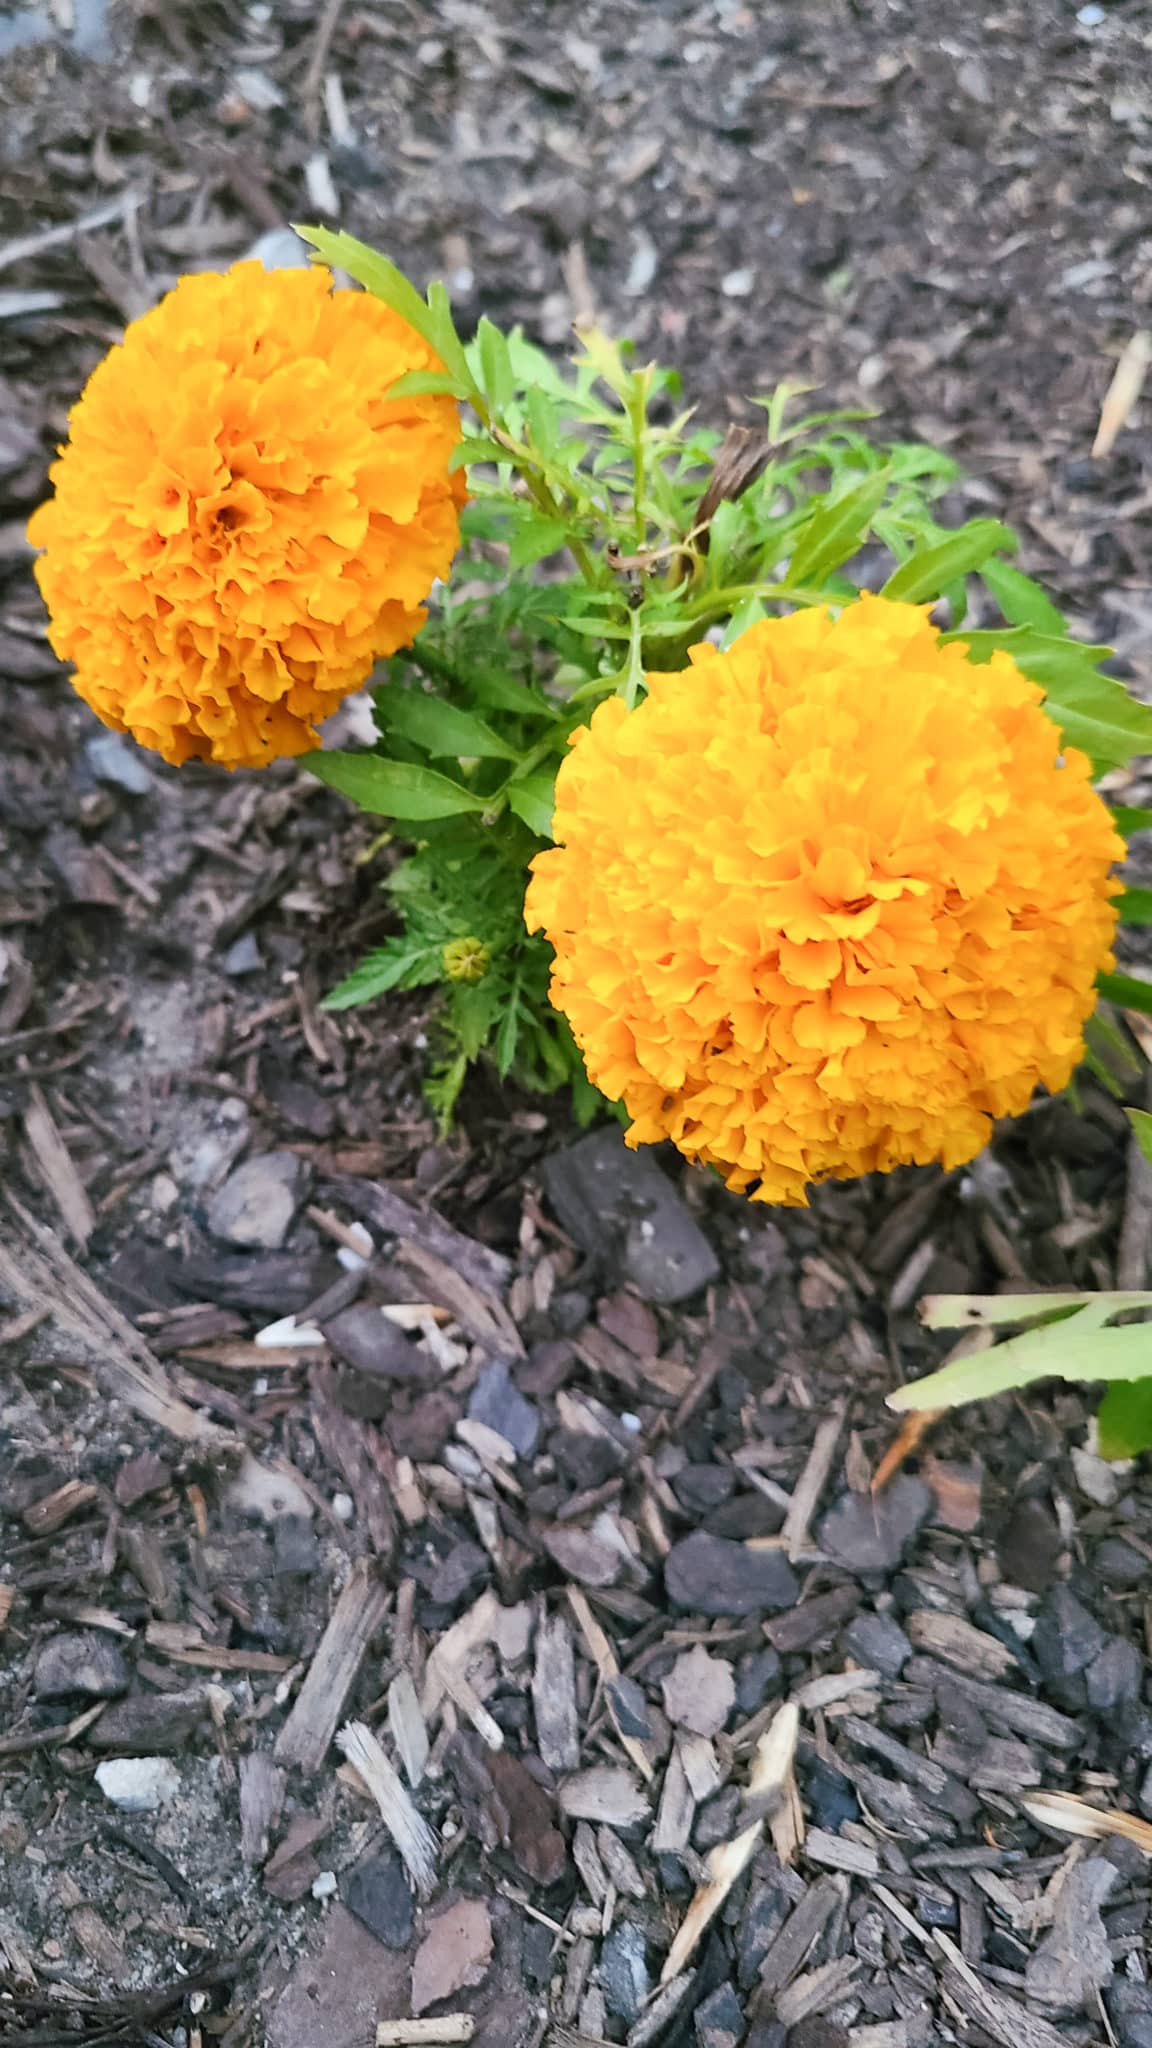 Beginner garden tips showing marigolds